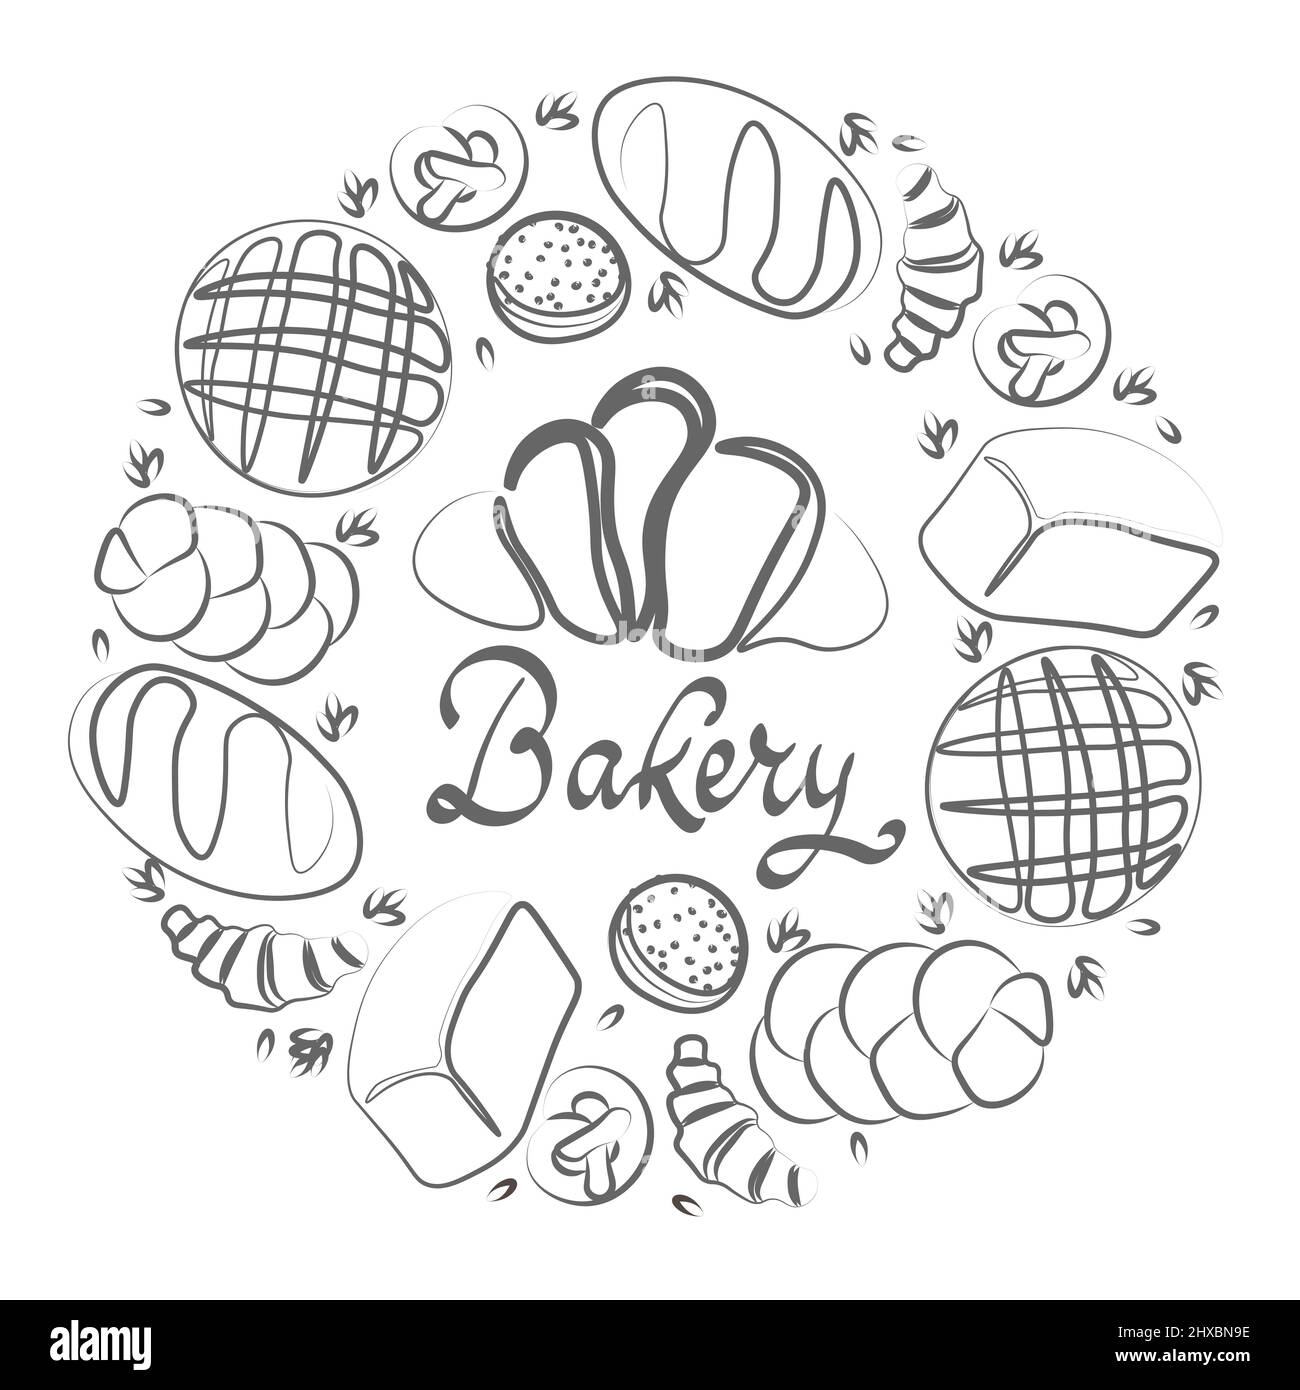 Design vettoriale alla moda per panetteria o cafe.Illustrations di panini, baguette, e altri dolci per imballaggio, etichette, o insegne.Line art Illustrazione Vettoriale